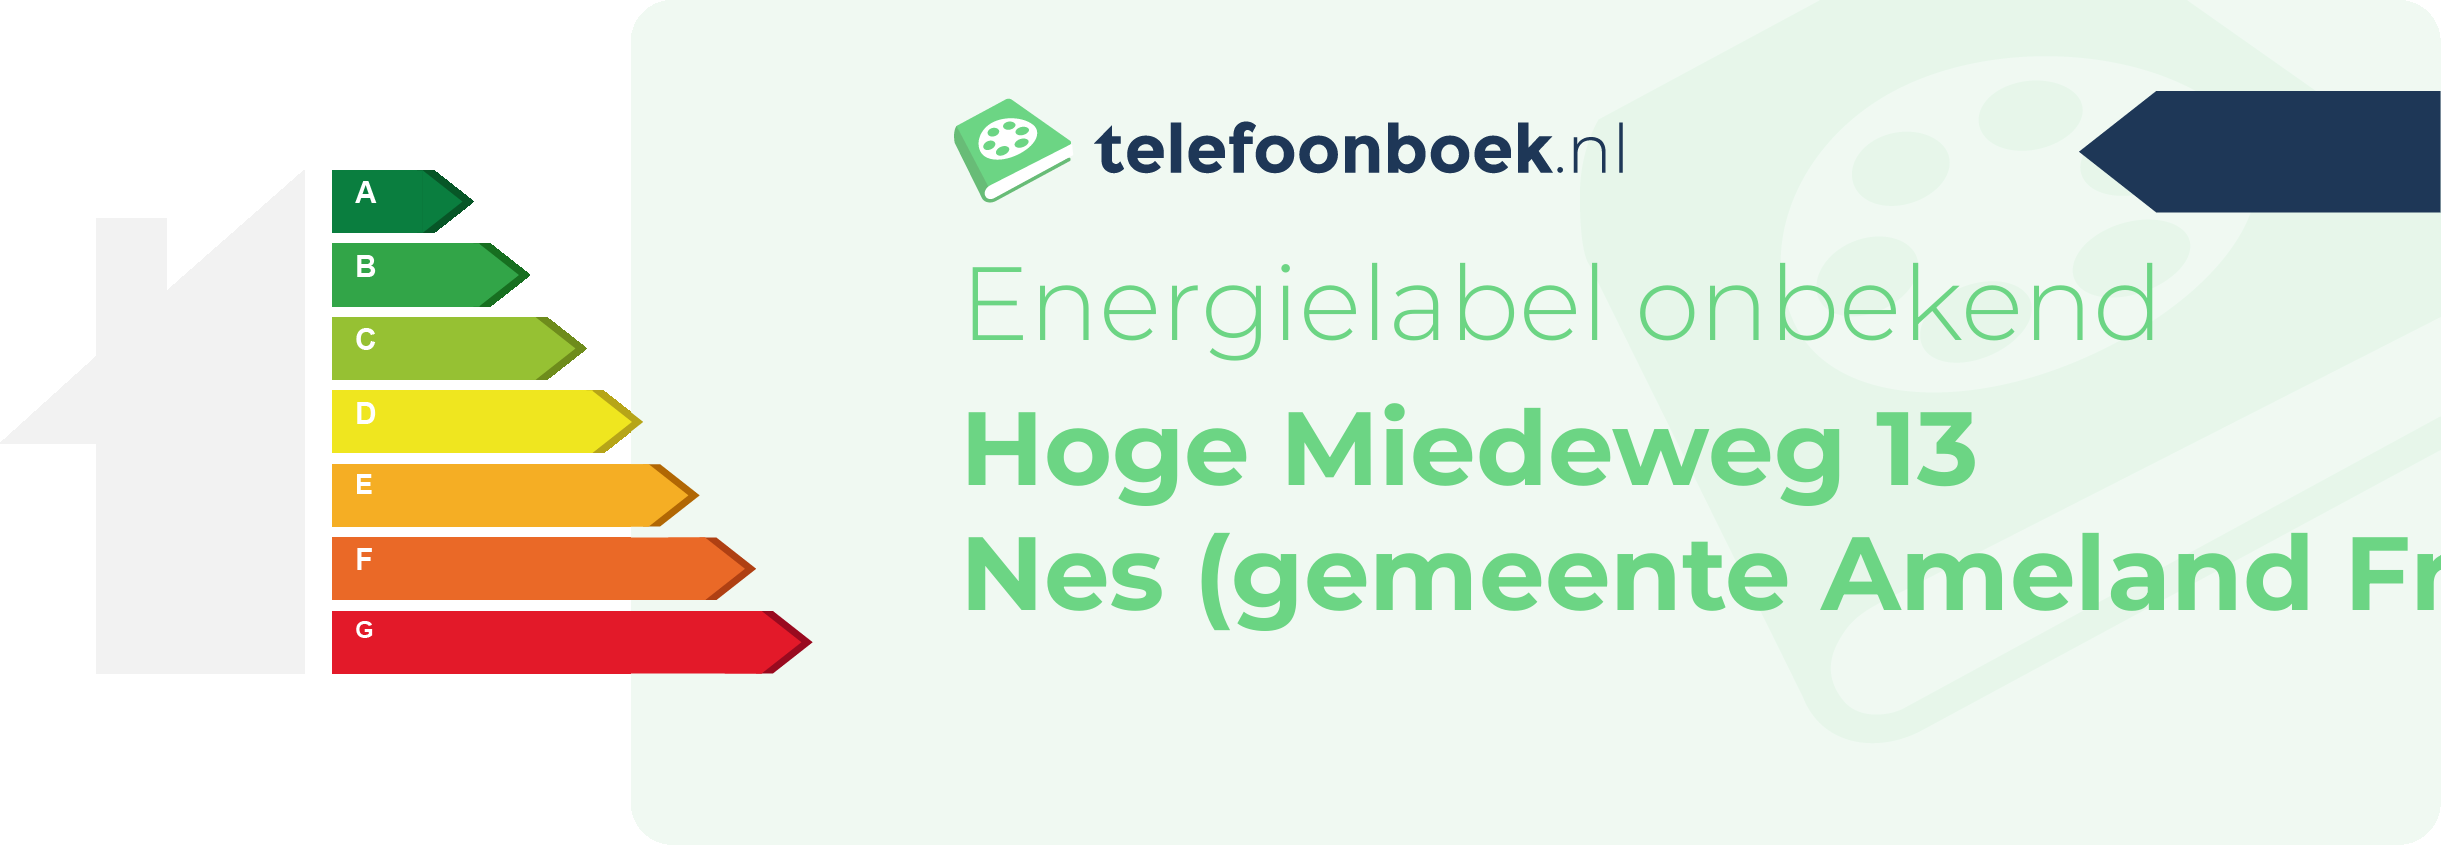 Energielabel Hoge Miedeweg 13 Nes (gemeente Ameland Friesland)